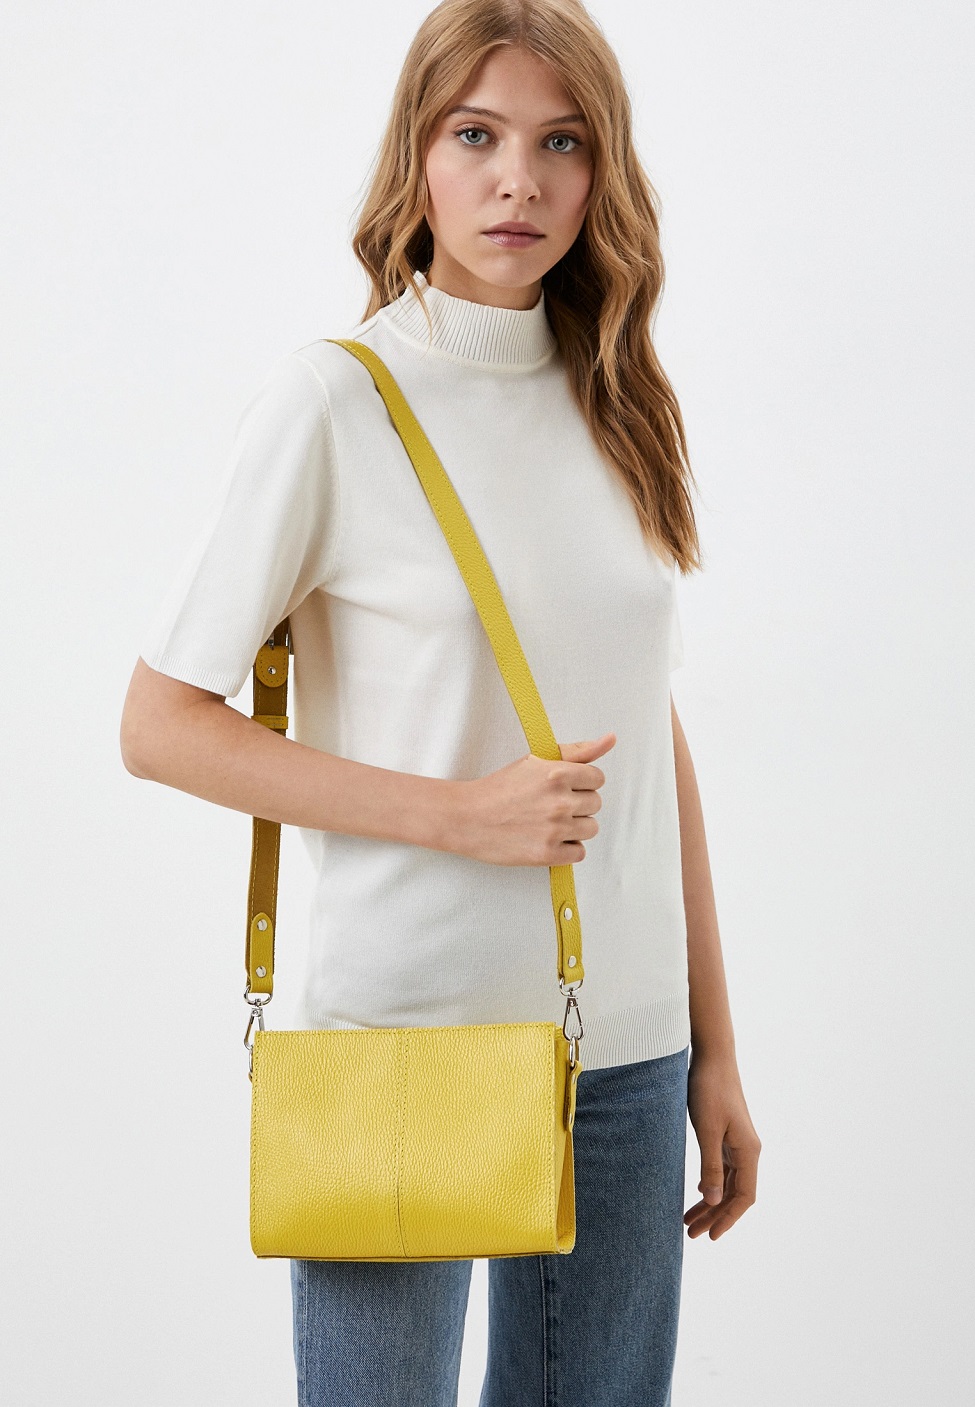 Женская кожаная сумка через плечо желтая A025 lemon mini grain